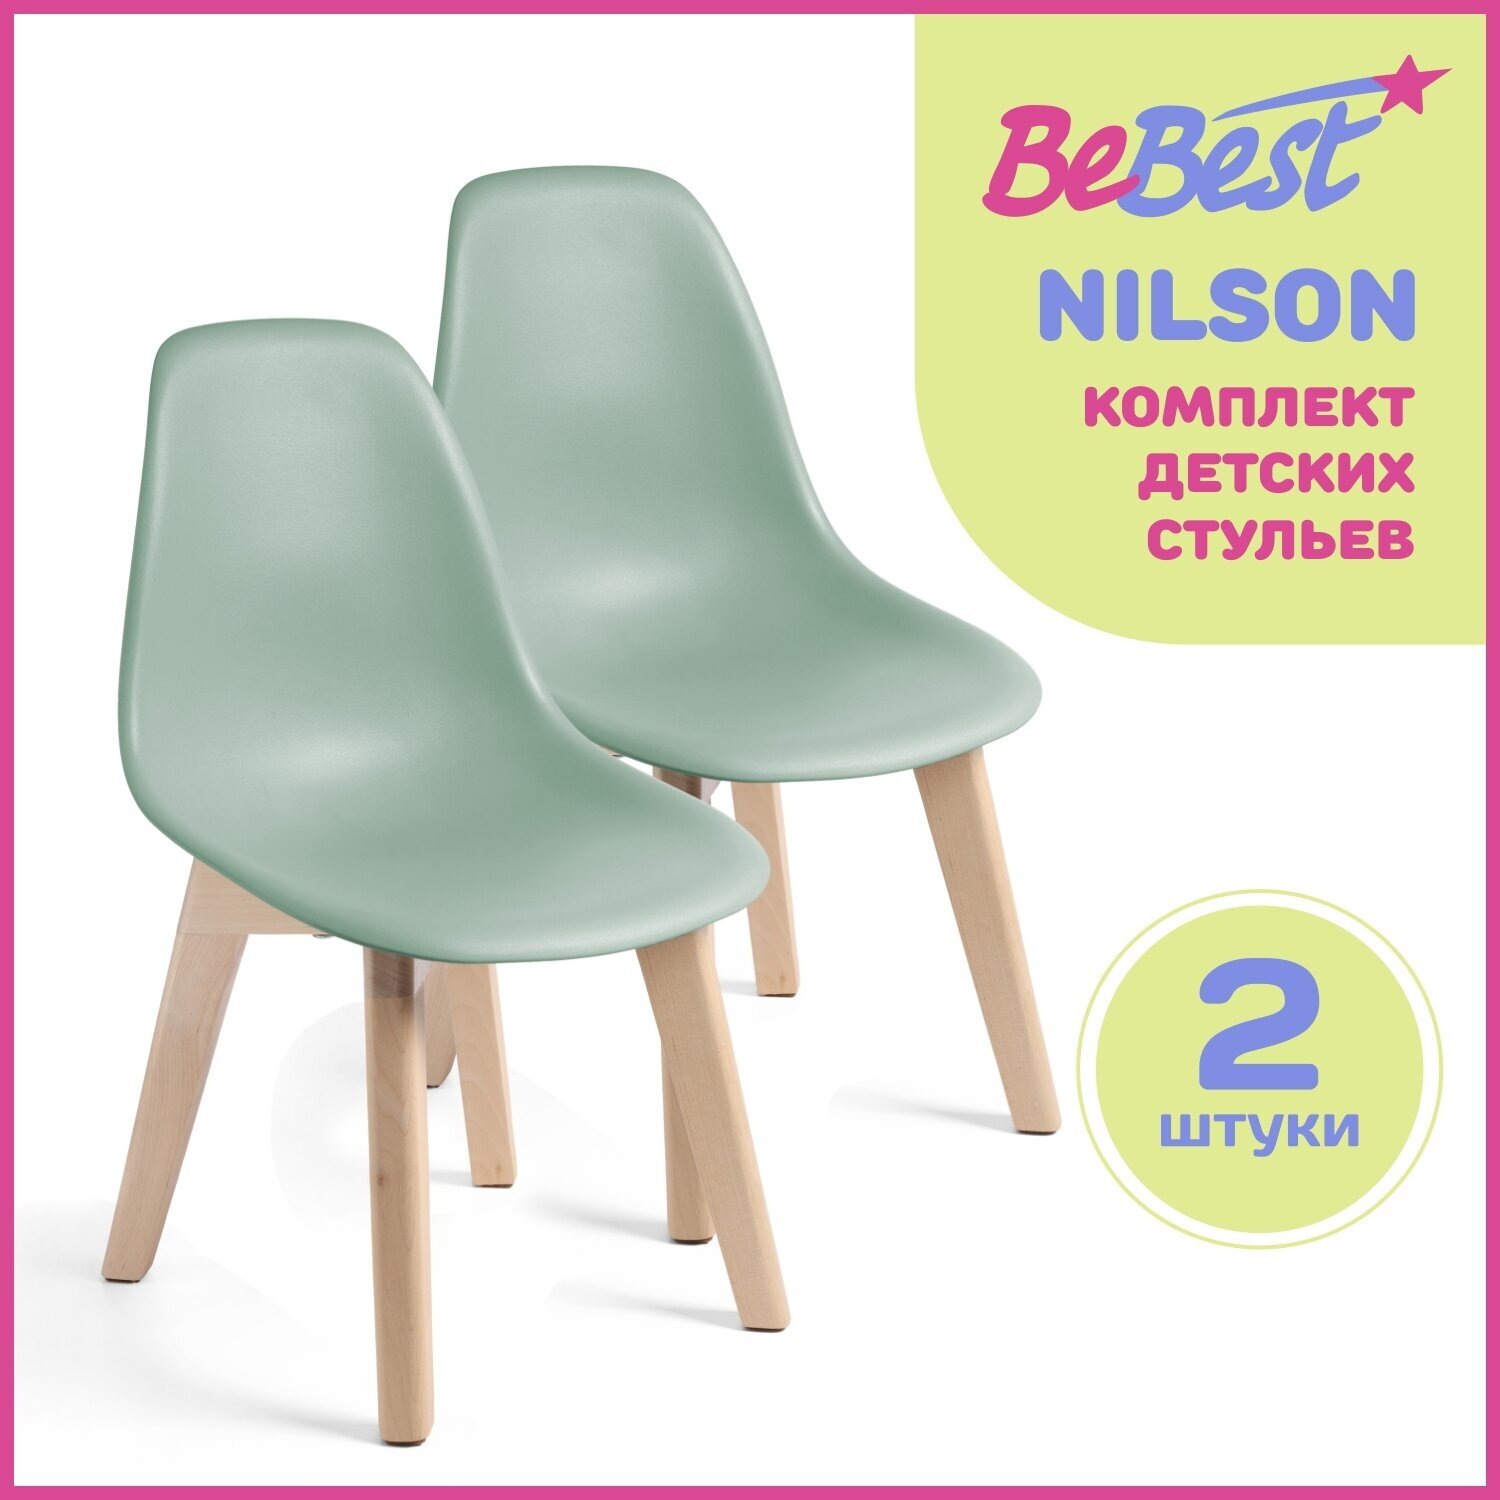 Набор детских стульев, BeBest стульчик со спинкой «Nilson», зеленый - фотография № 1